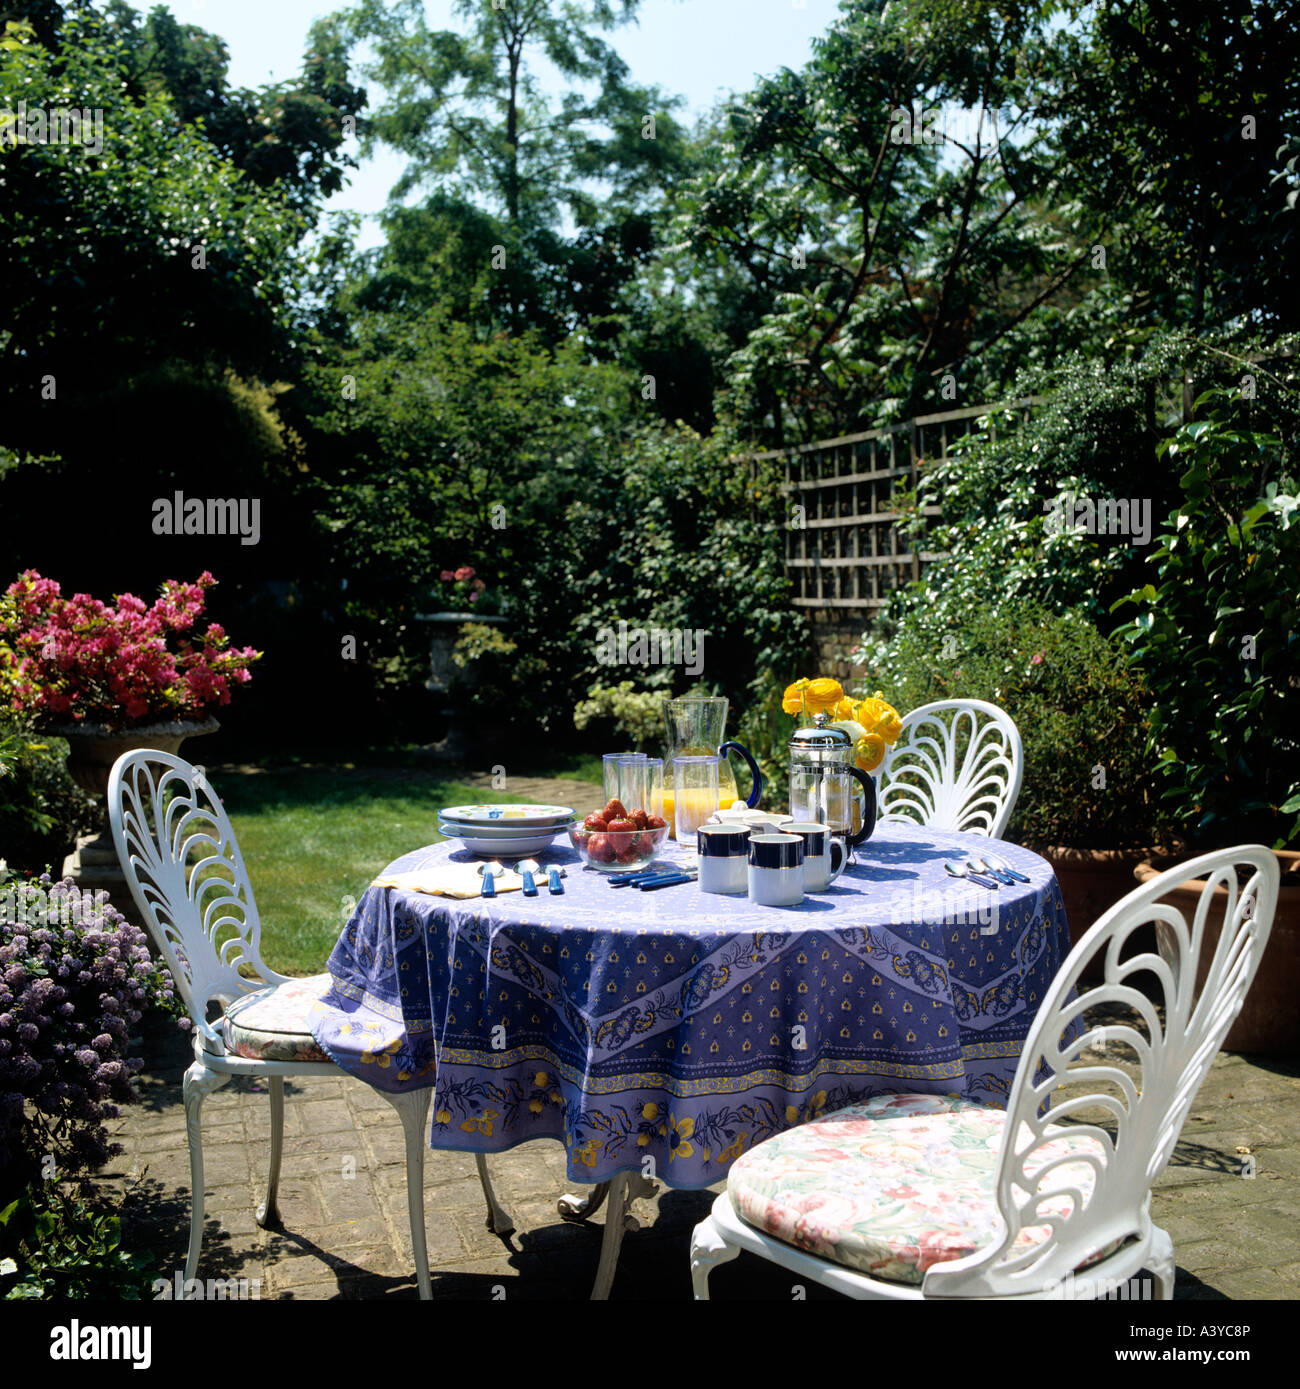 Table-set in an English garden Stock Photo